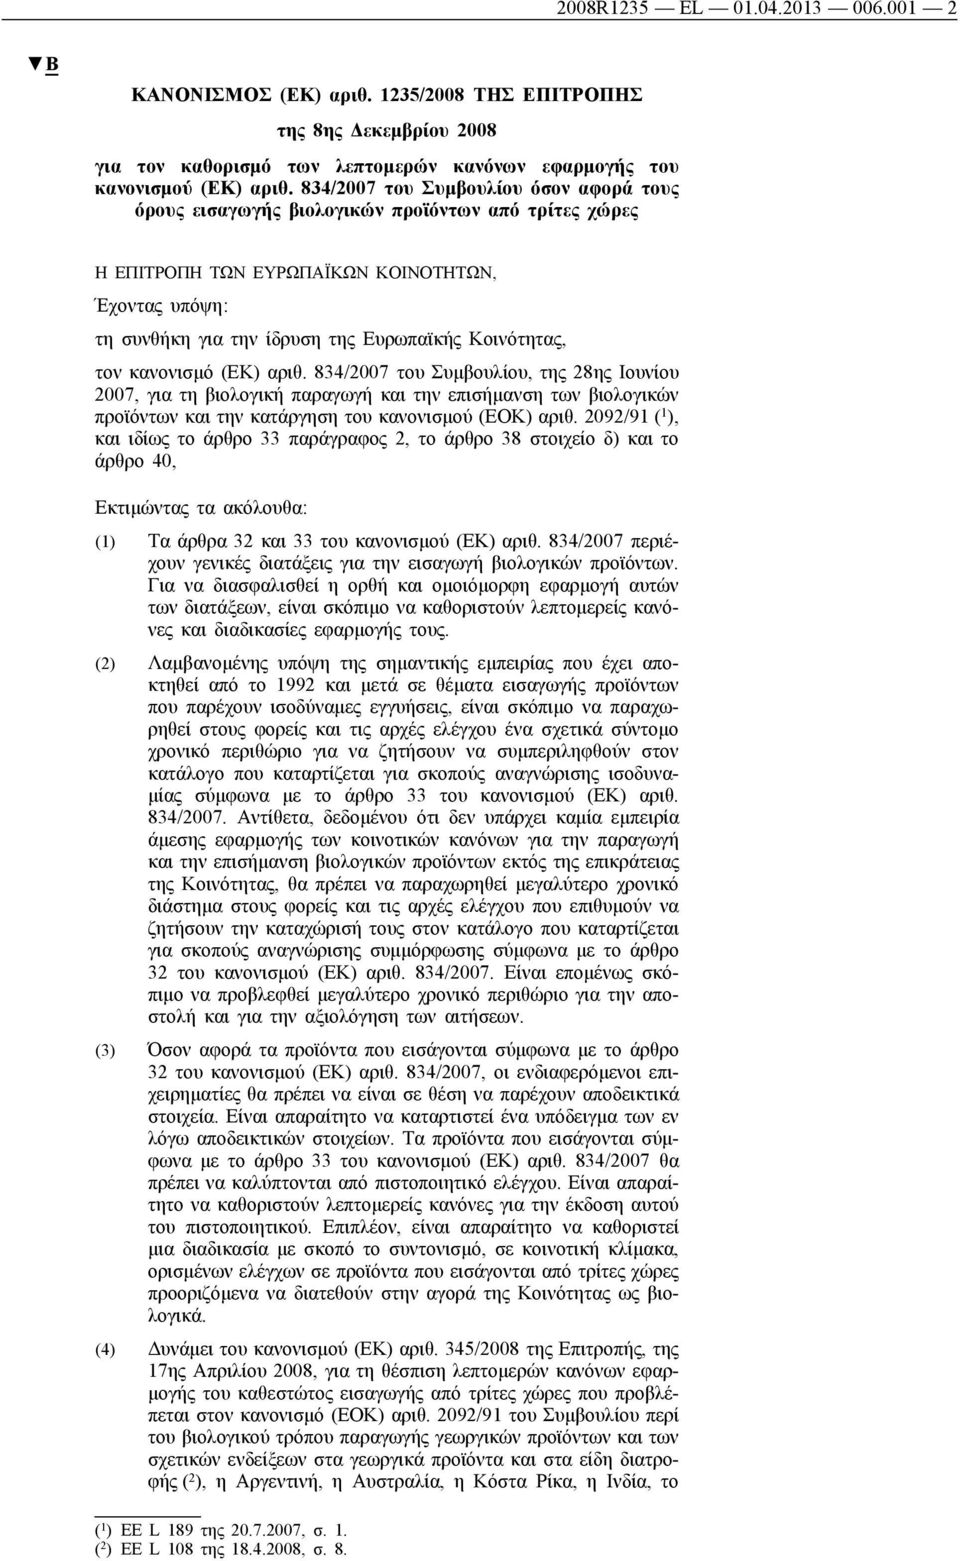 τον κανονισμό (ΕΚ) αριθ. 834/2007 του Συμβουλίου, της 28ης Ιουνίου 2007, για τη βιολογική παραγωγή και την επισήμανση των βιολογικών προϊόντων και την κατάργηση του κανονισμού (ΕΟΚ) αριθ.